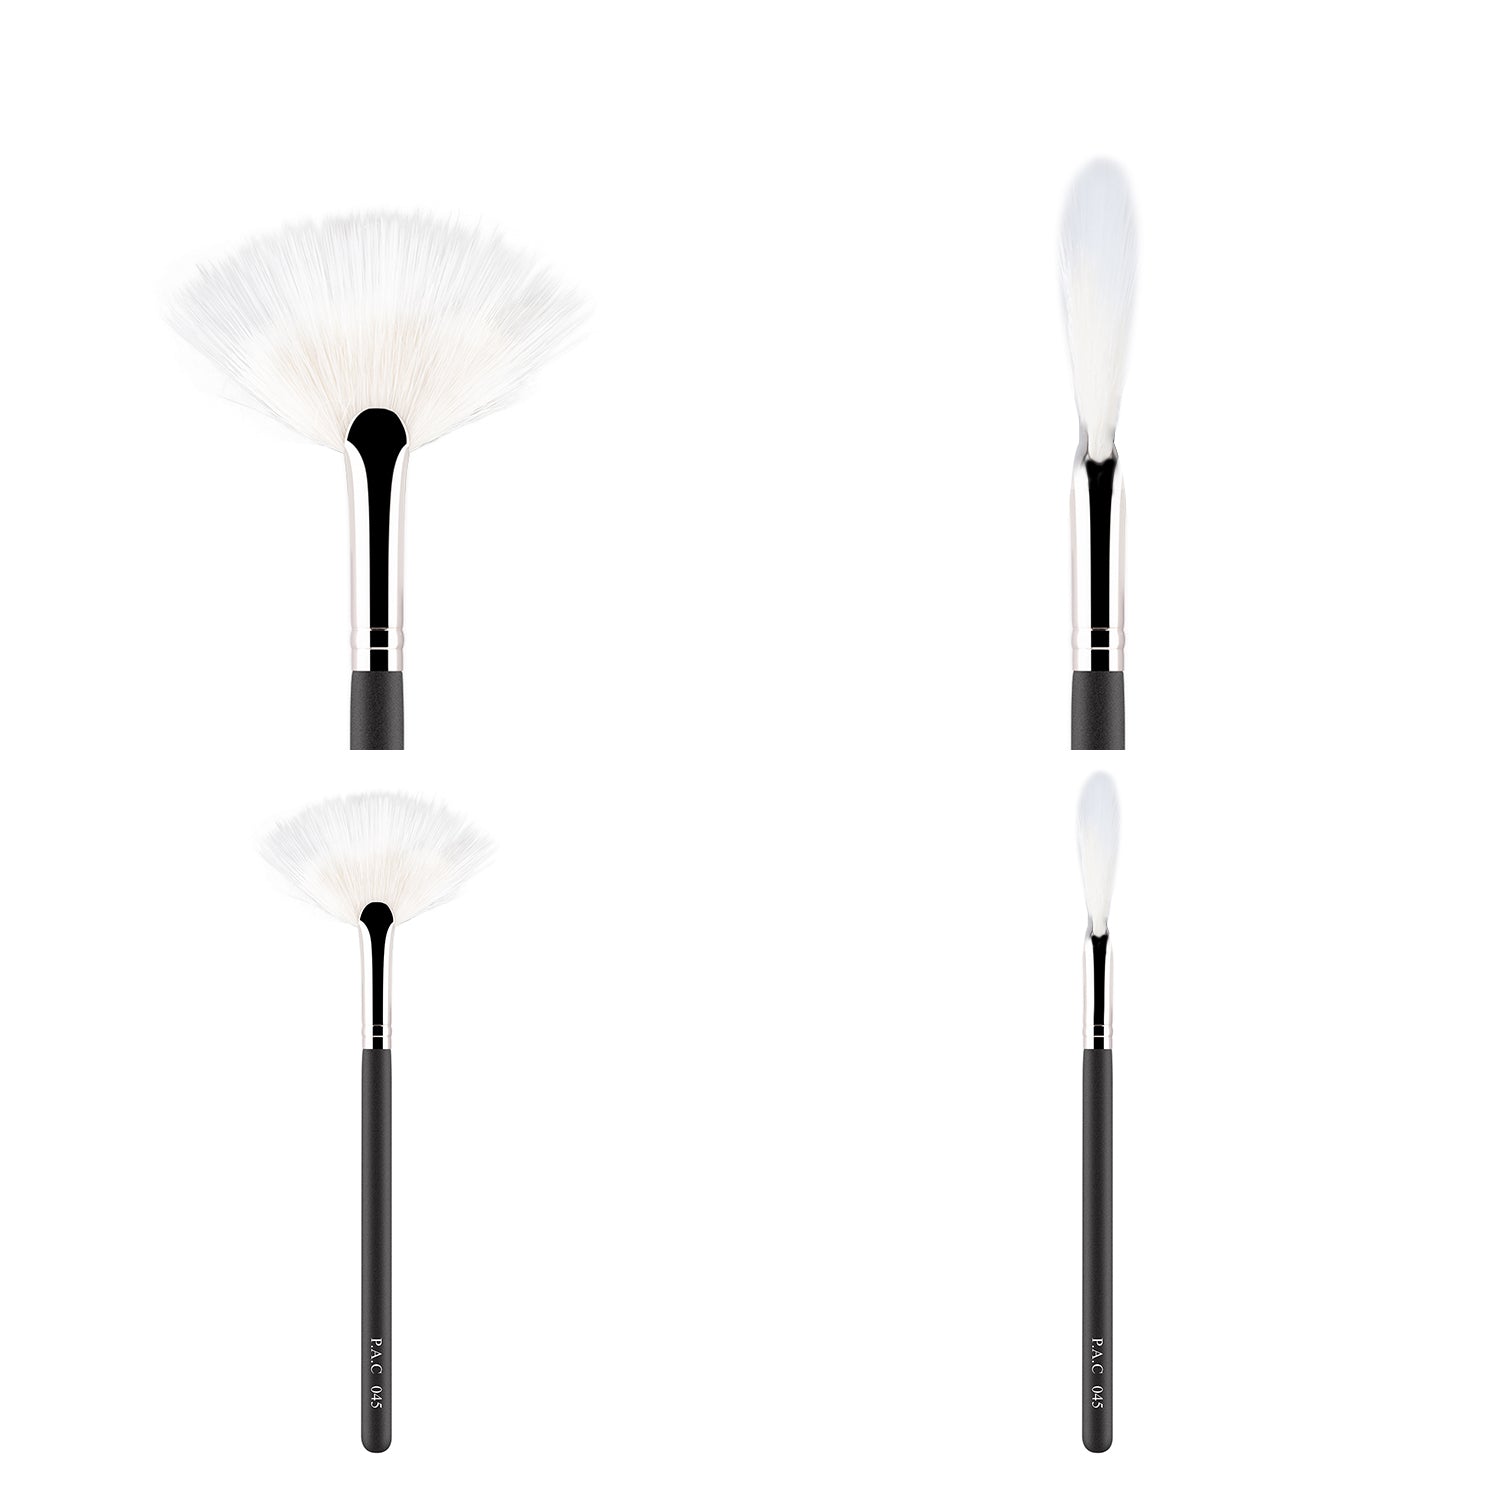 PAC Cosmetics Fan Brush 045